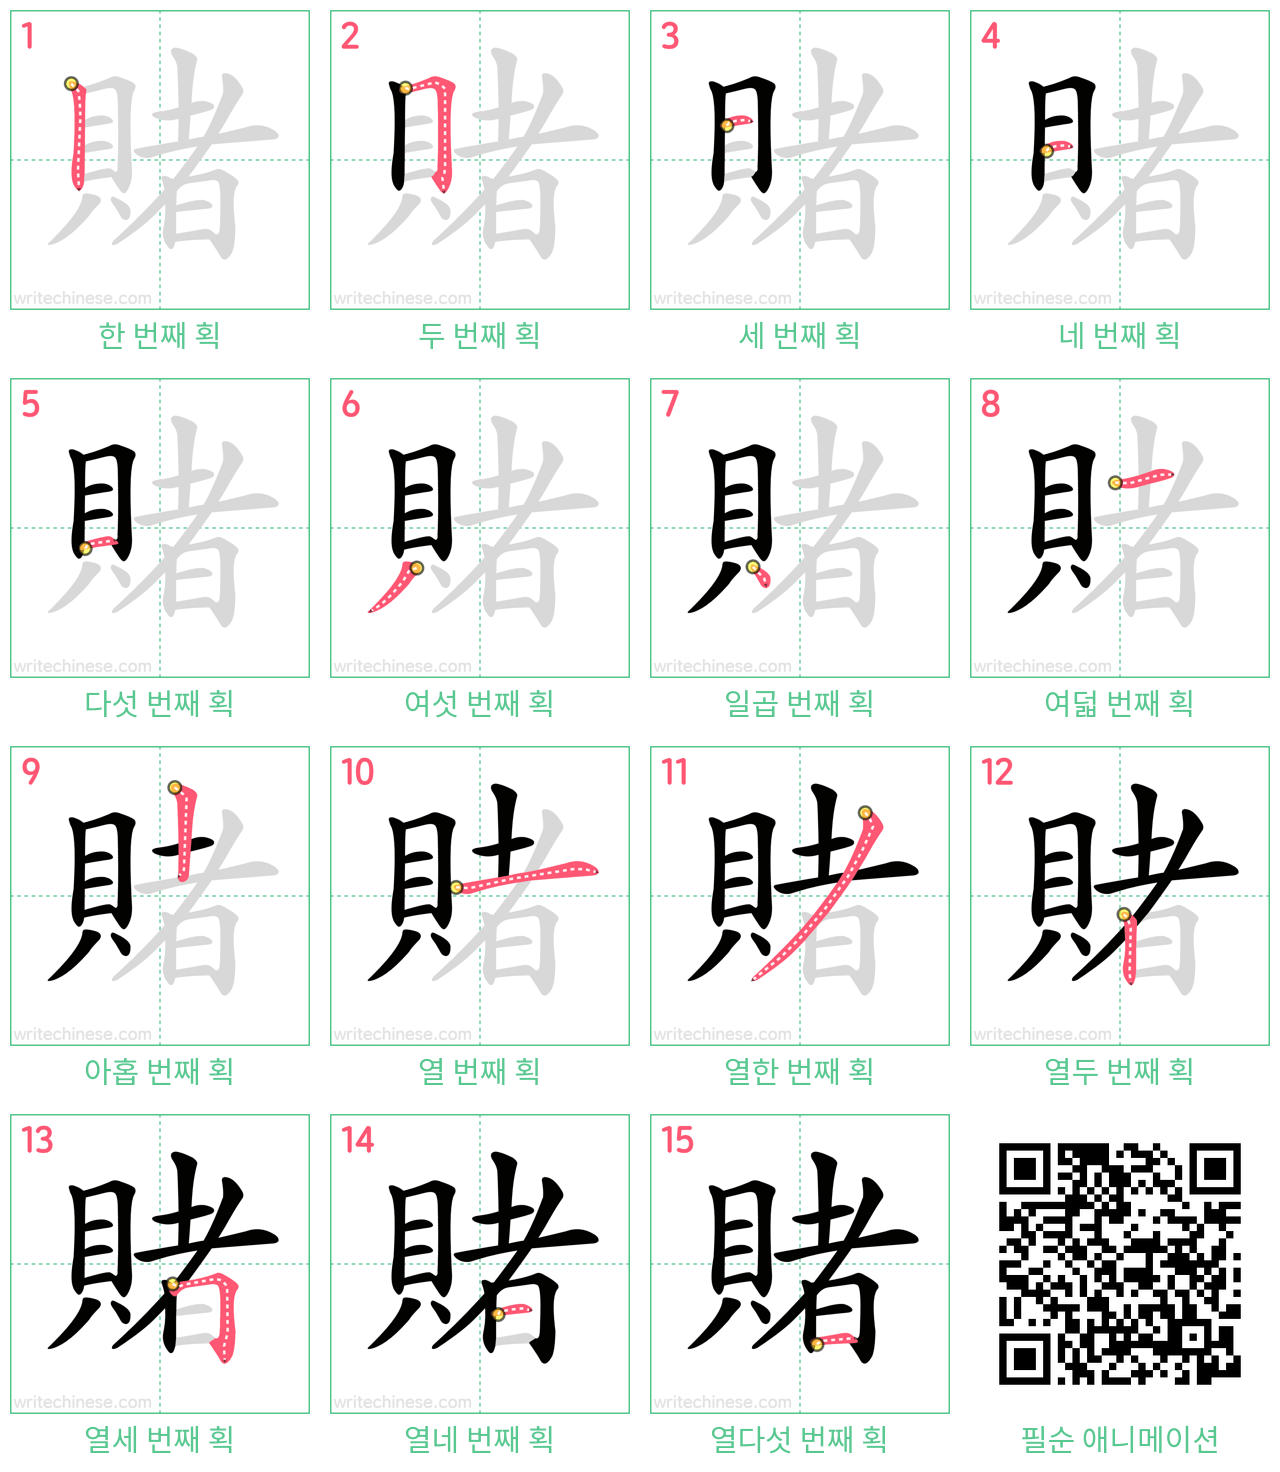 賭 step-by-step stroke order diagrams